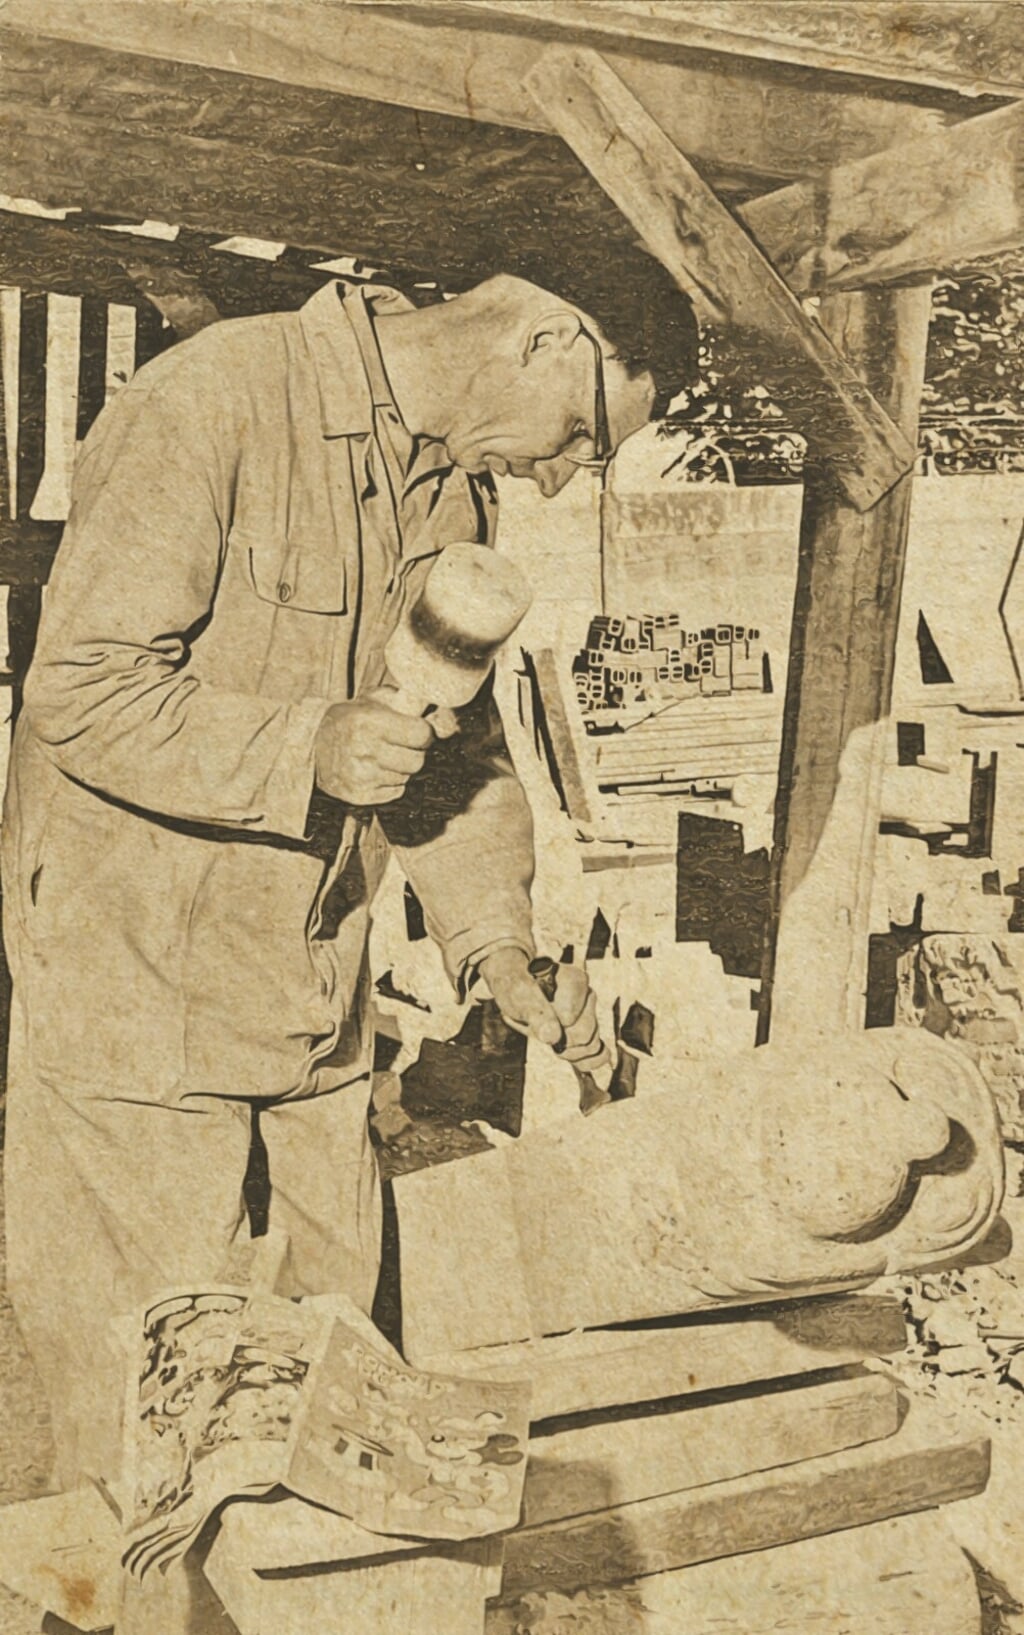 Beeldhouwer Henk Vreeling aan het werk. Uit de krant van toen. Foto uit de publicatie 'Een kerk als tijdsbeeld'